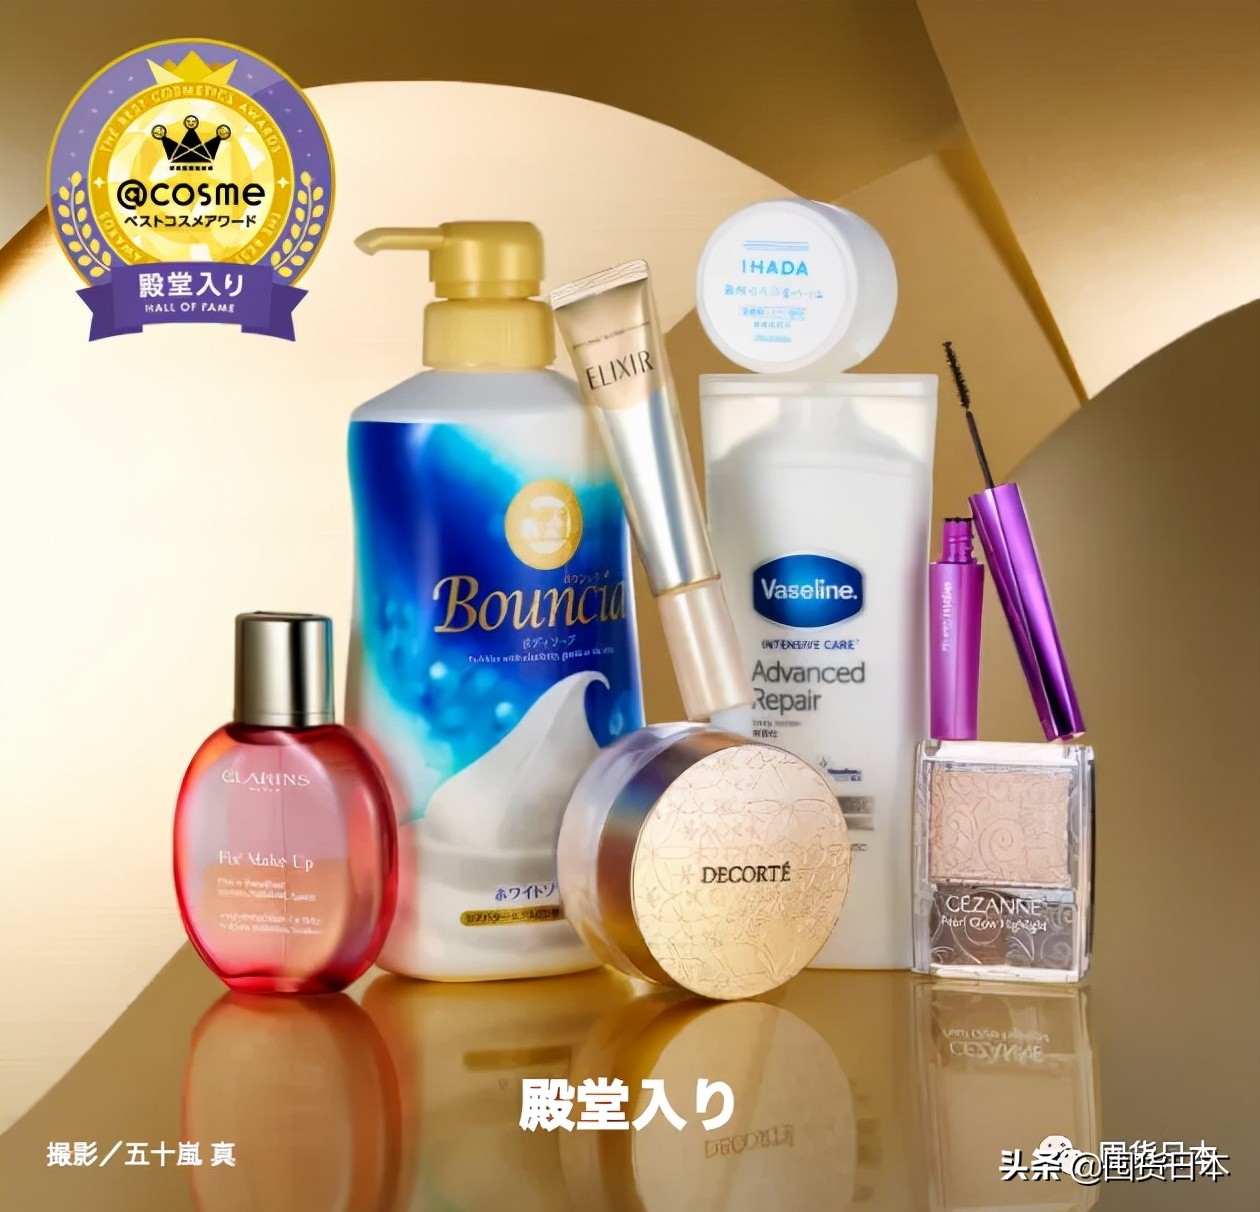 2021年度@cosme日本最大美妆榜单发布啦！只看各部门的第一名